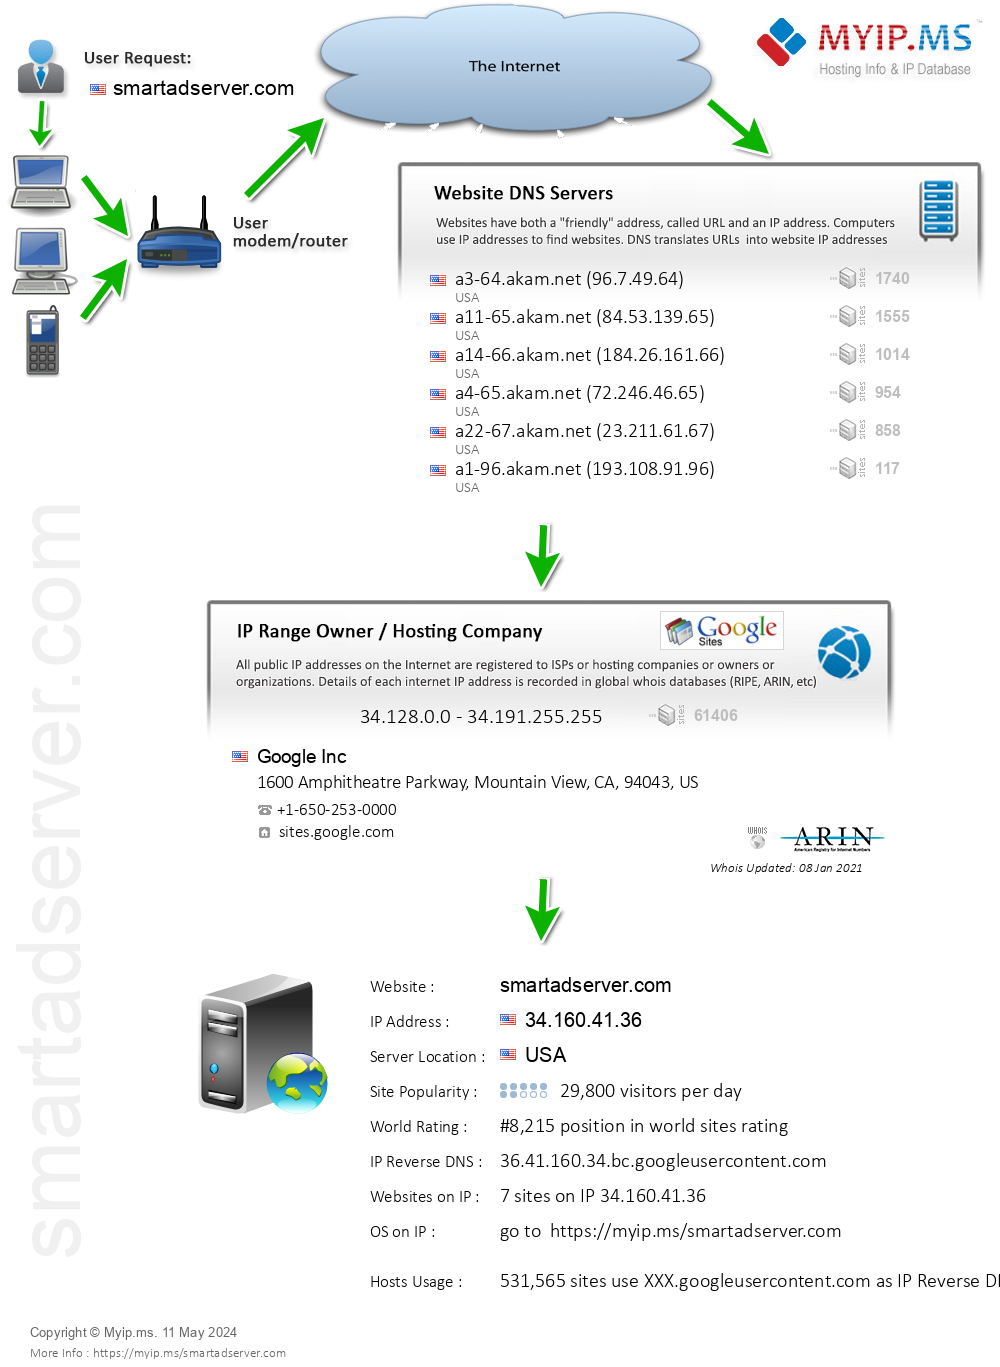 Smartadserver.com - Website Hosting Visual IP Diagram